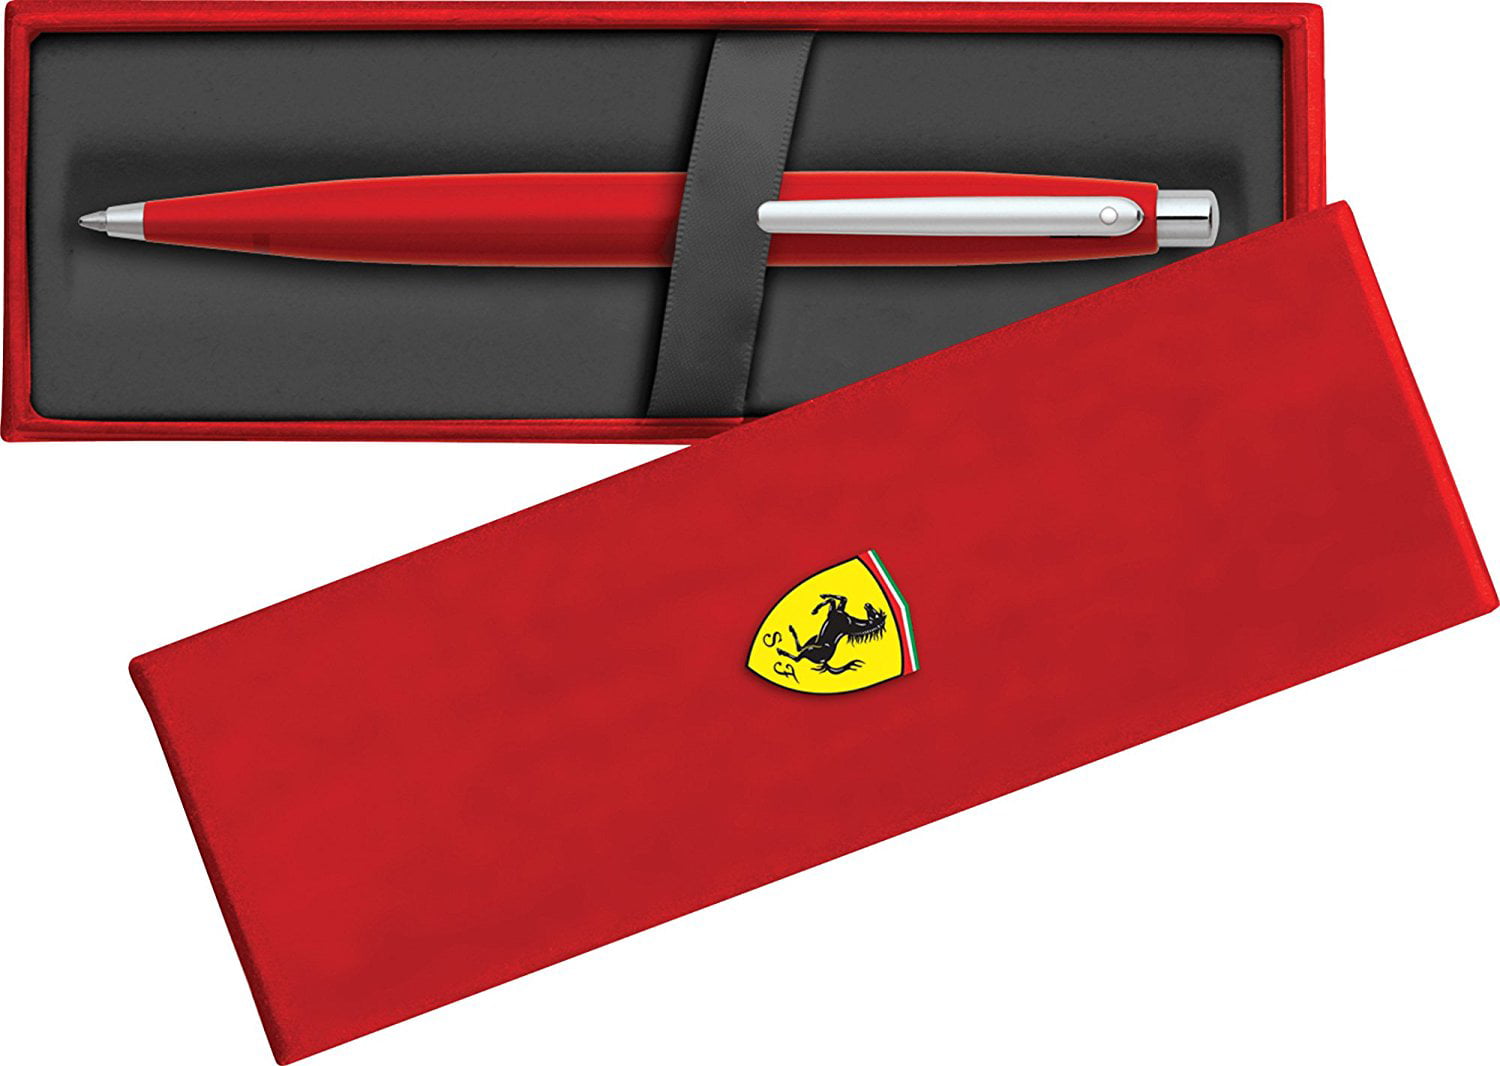 Sheaffer Scuderia Ferrari VFM Ballpoint Pen in Rosso Red White and Black Gloss